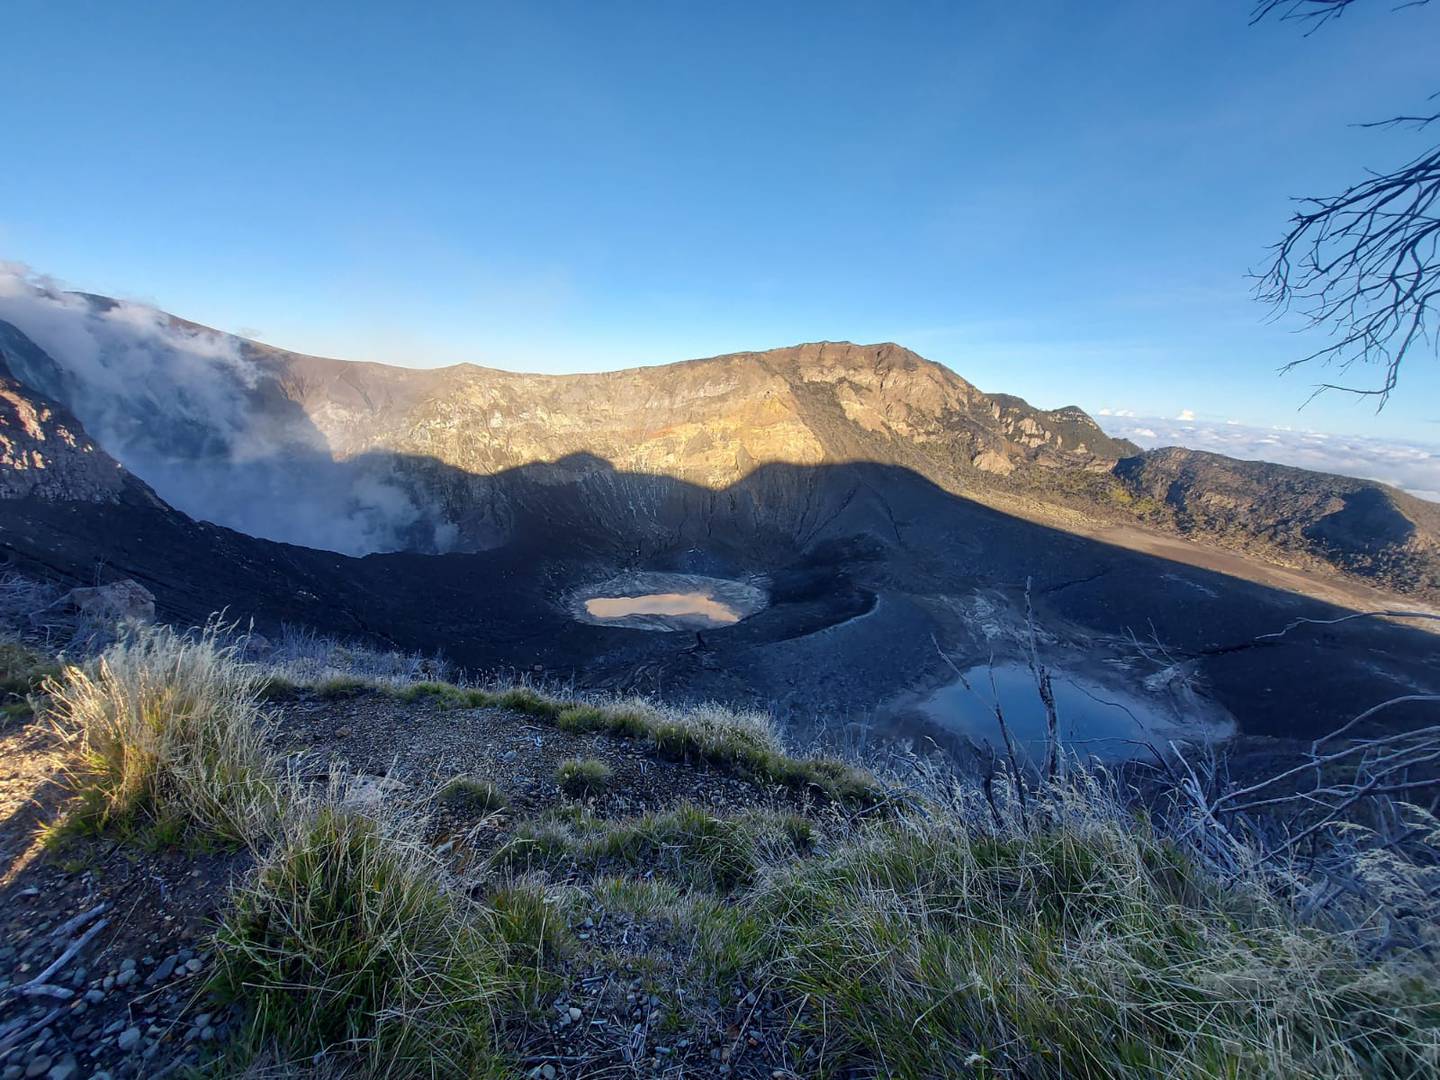 Desde el mirador, los turistas pueden ver tres cráteres, a la izquierda el activo. Los otros dos son sistemas cerrados por donde hubo anteriores ciclos eruptivos. Foto: Cortesía: Reyna Sanchez S.